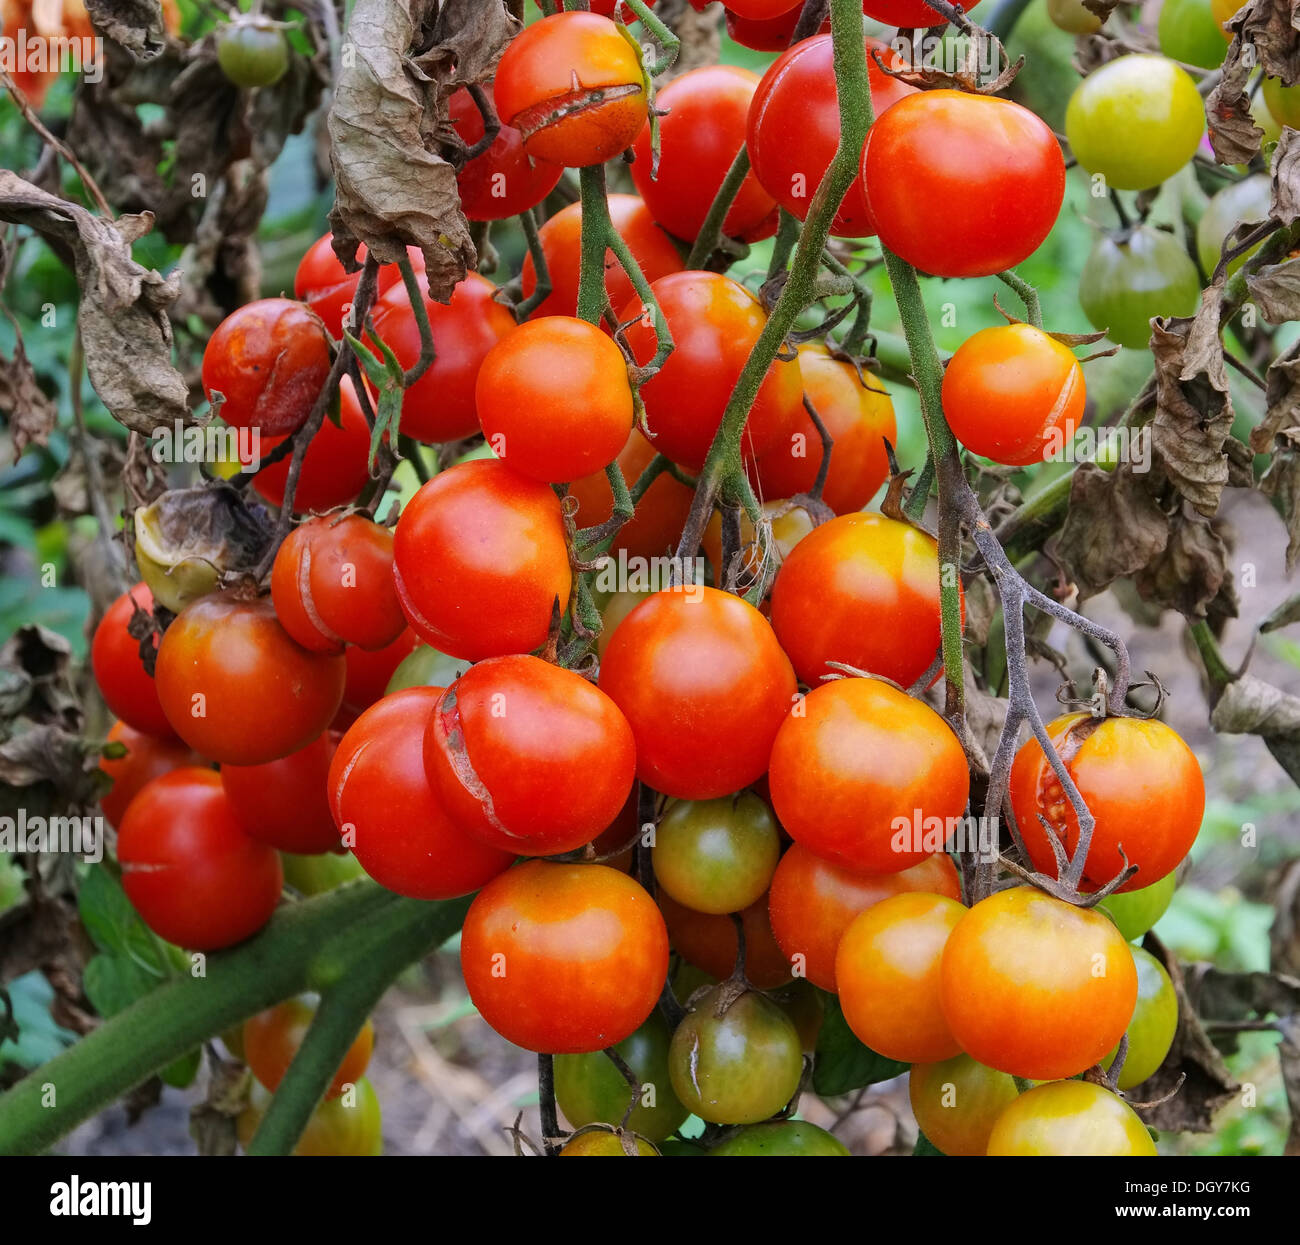 Tomate-Braunfaeule - Tomaten die Kraut-und Knollenfäule 02 Stockfoto